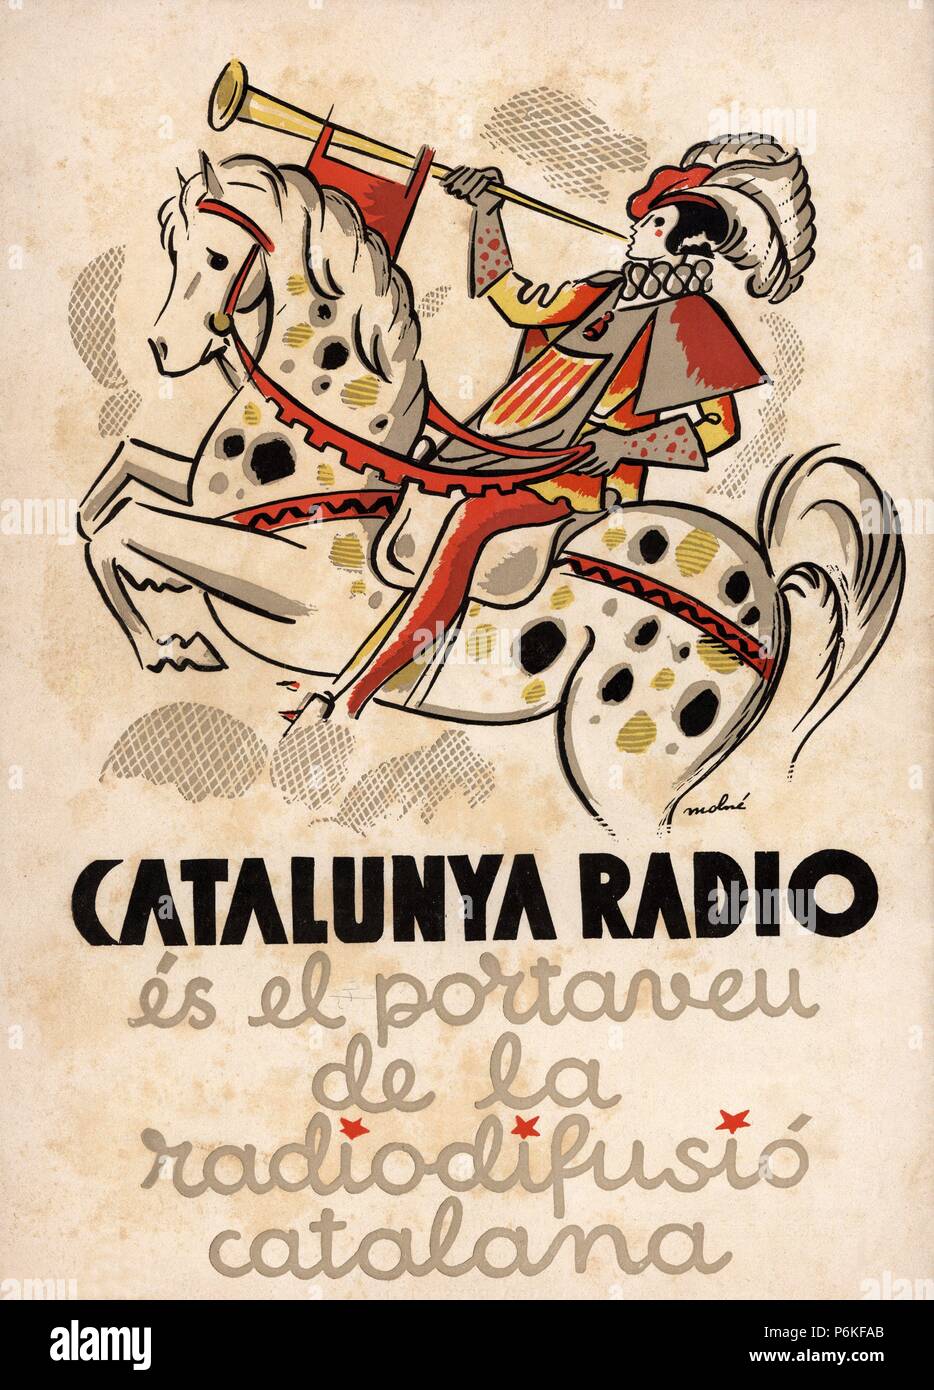 Cartel de Catalunya Ràdio, portavoz de la radiodifusión catalana. Año 1934  Stock Photo - Alamy